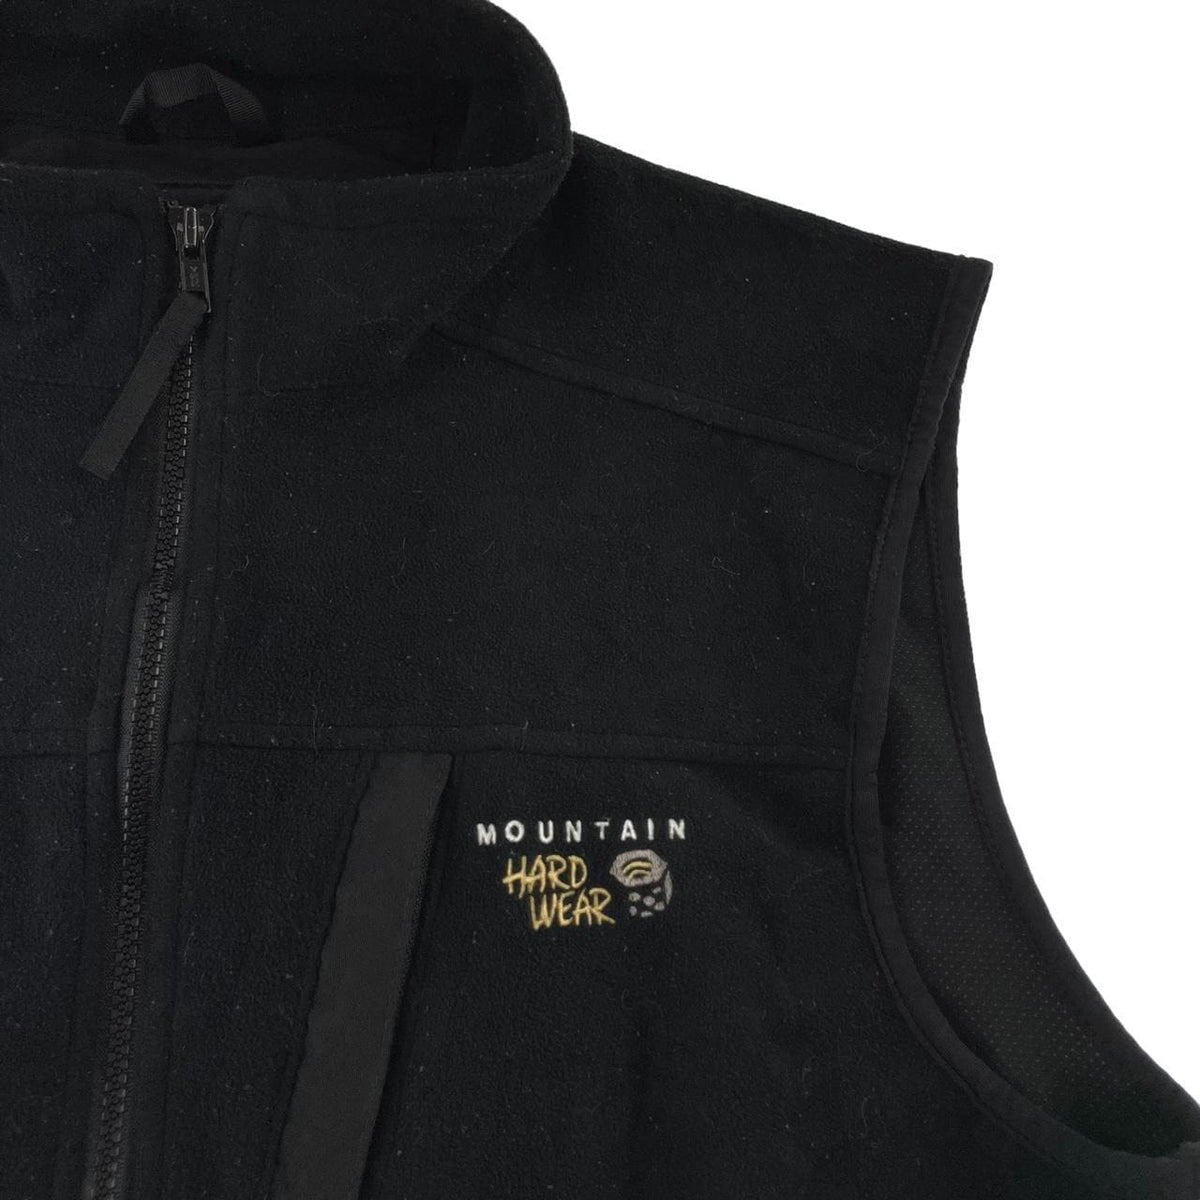 Mountain Hardwear zip vest jacket size S